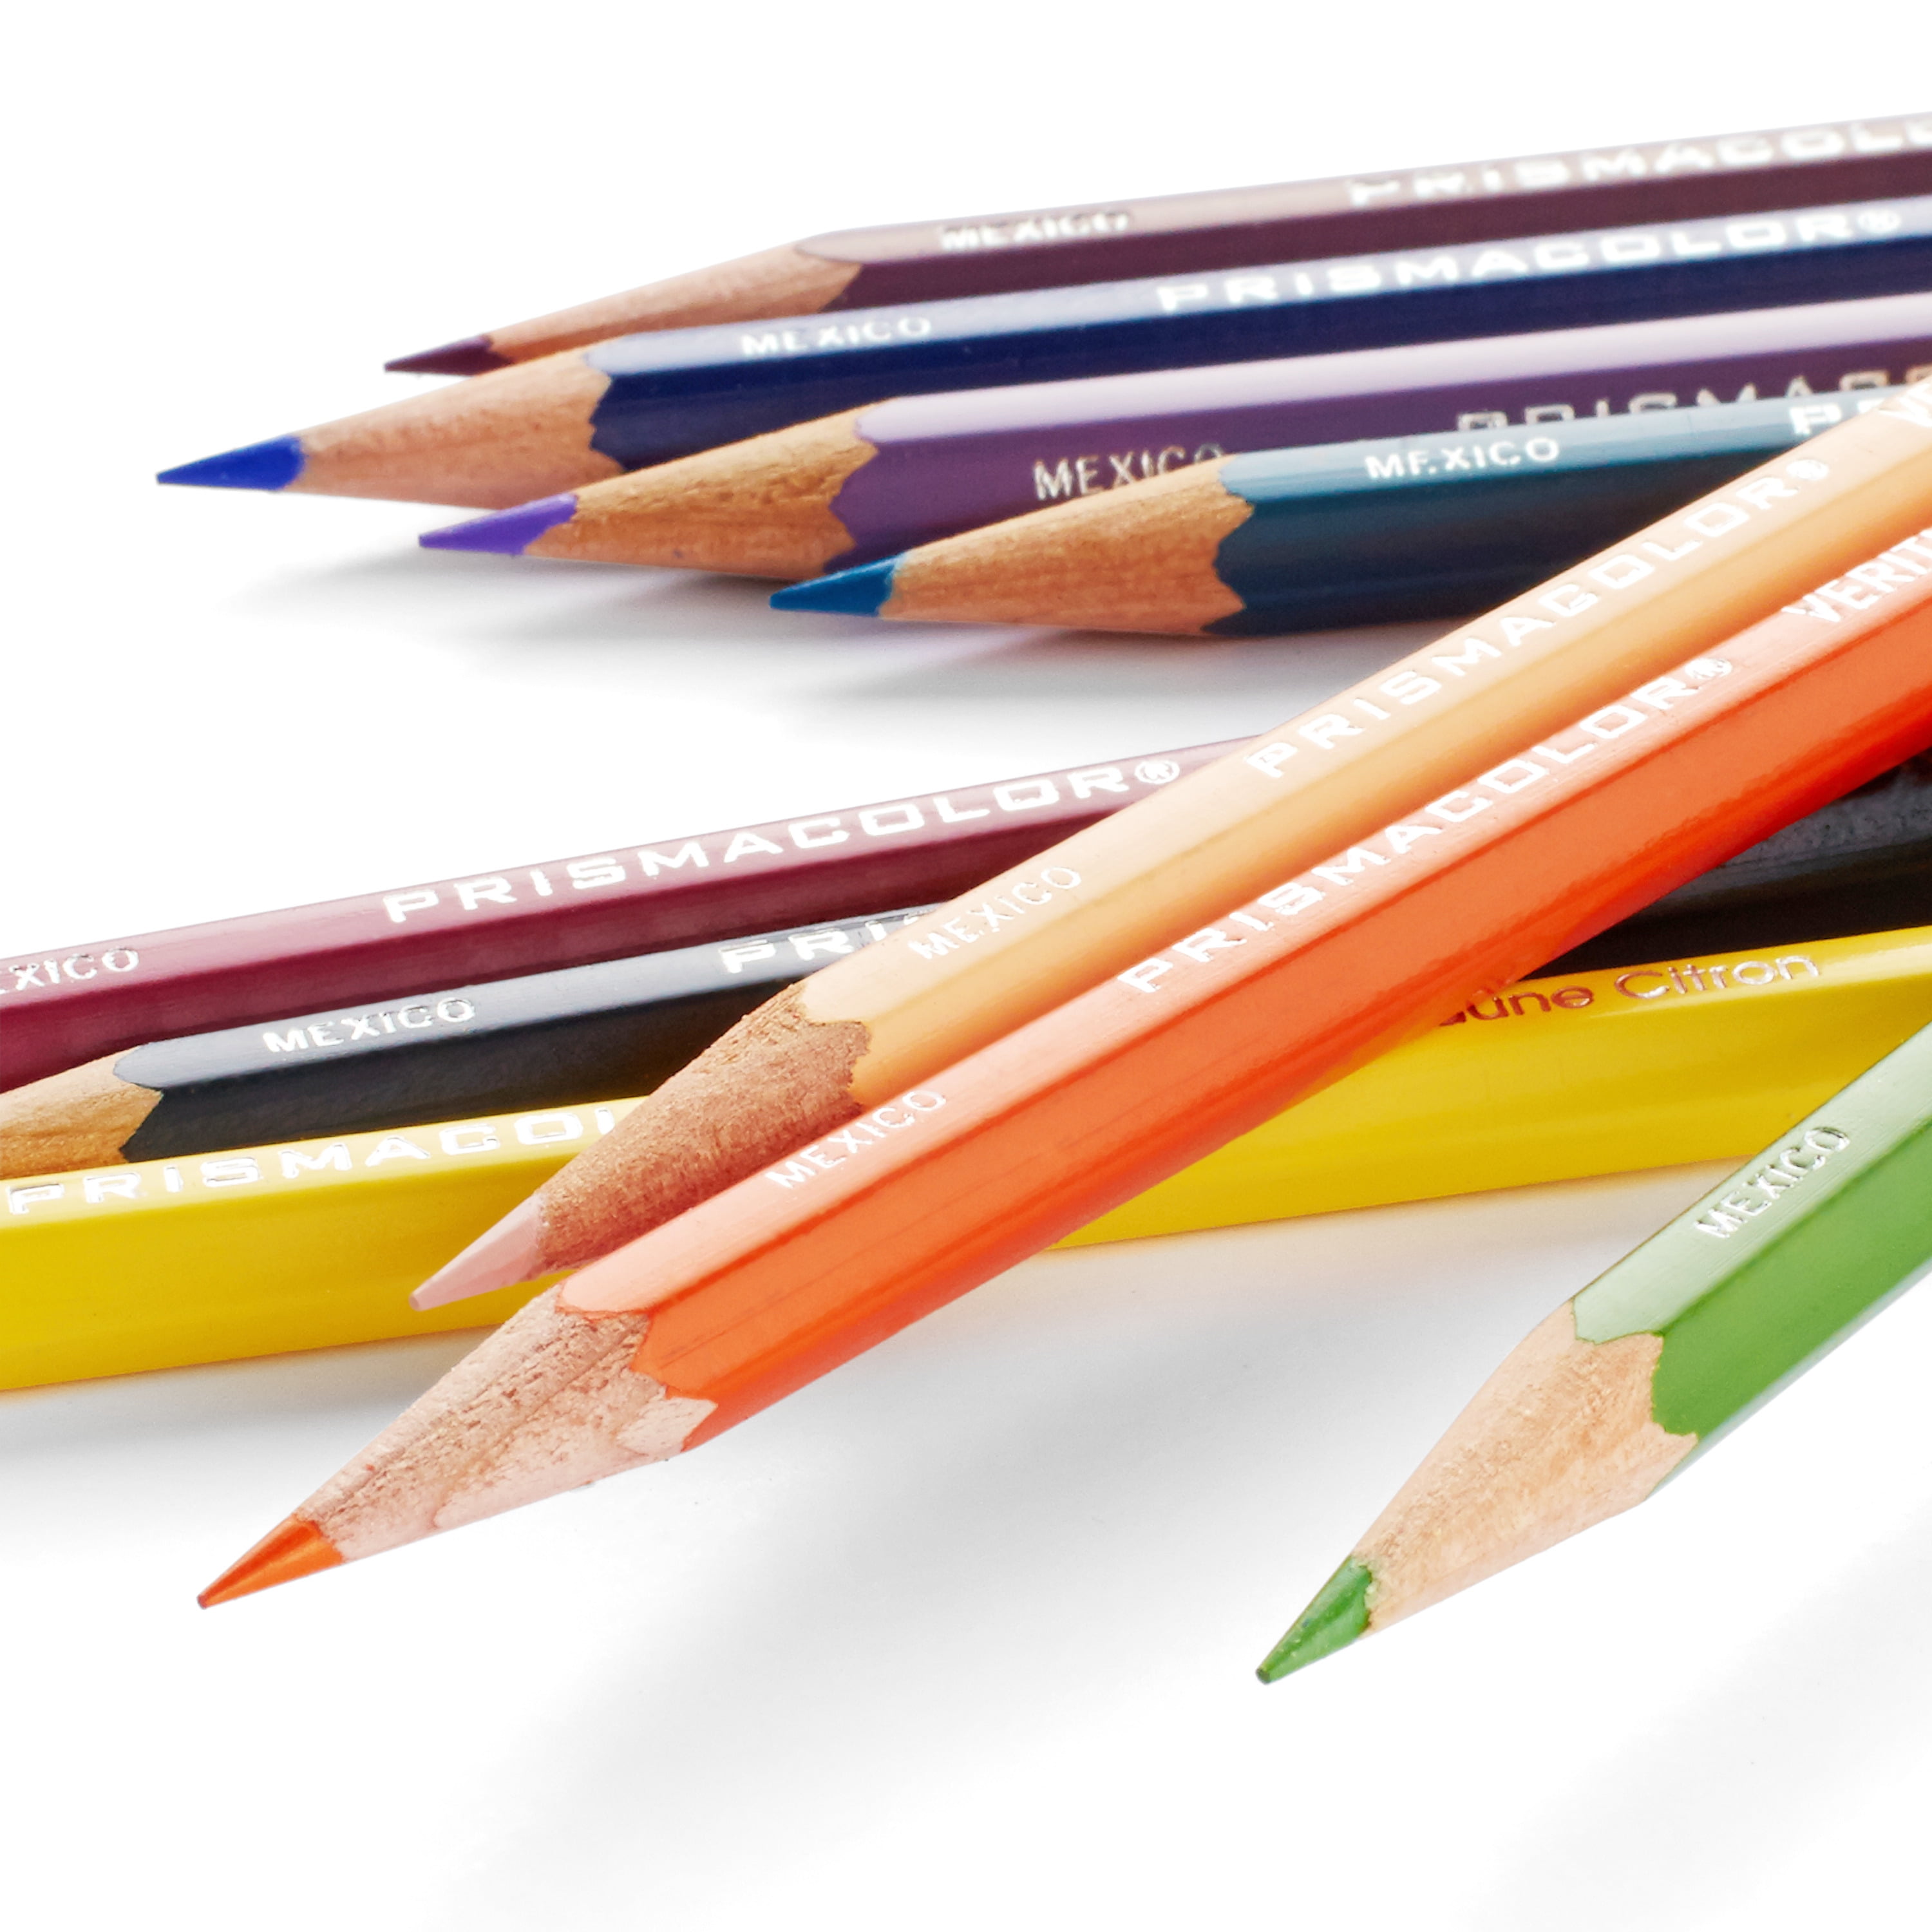 Prismacolor Premier Colored Pencils, Set of 72 - Artist & Craftsman Supply